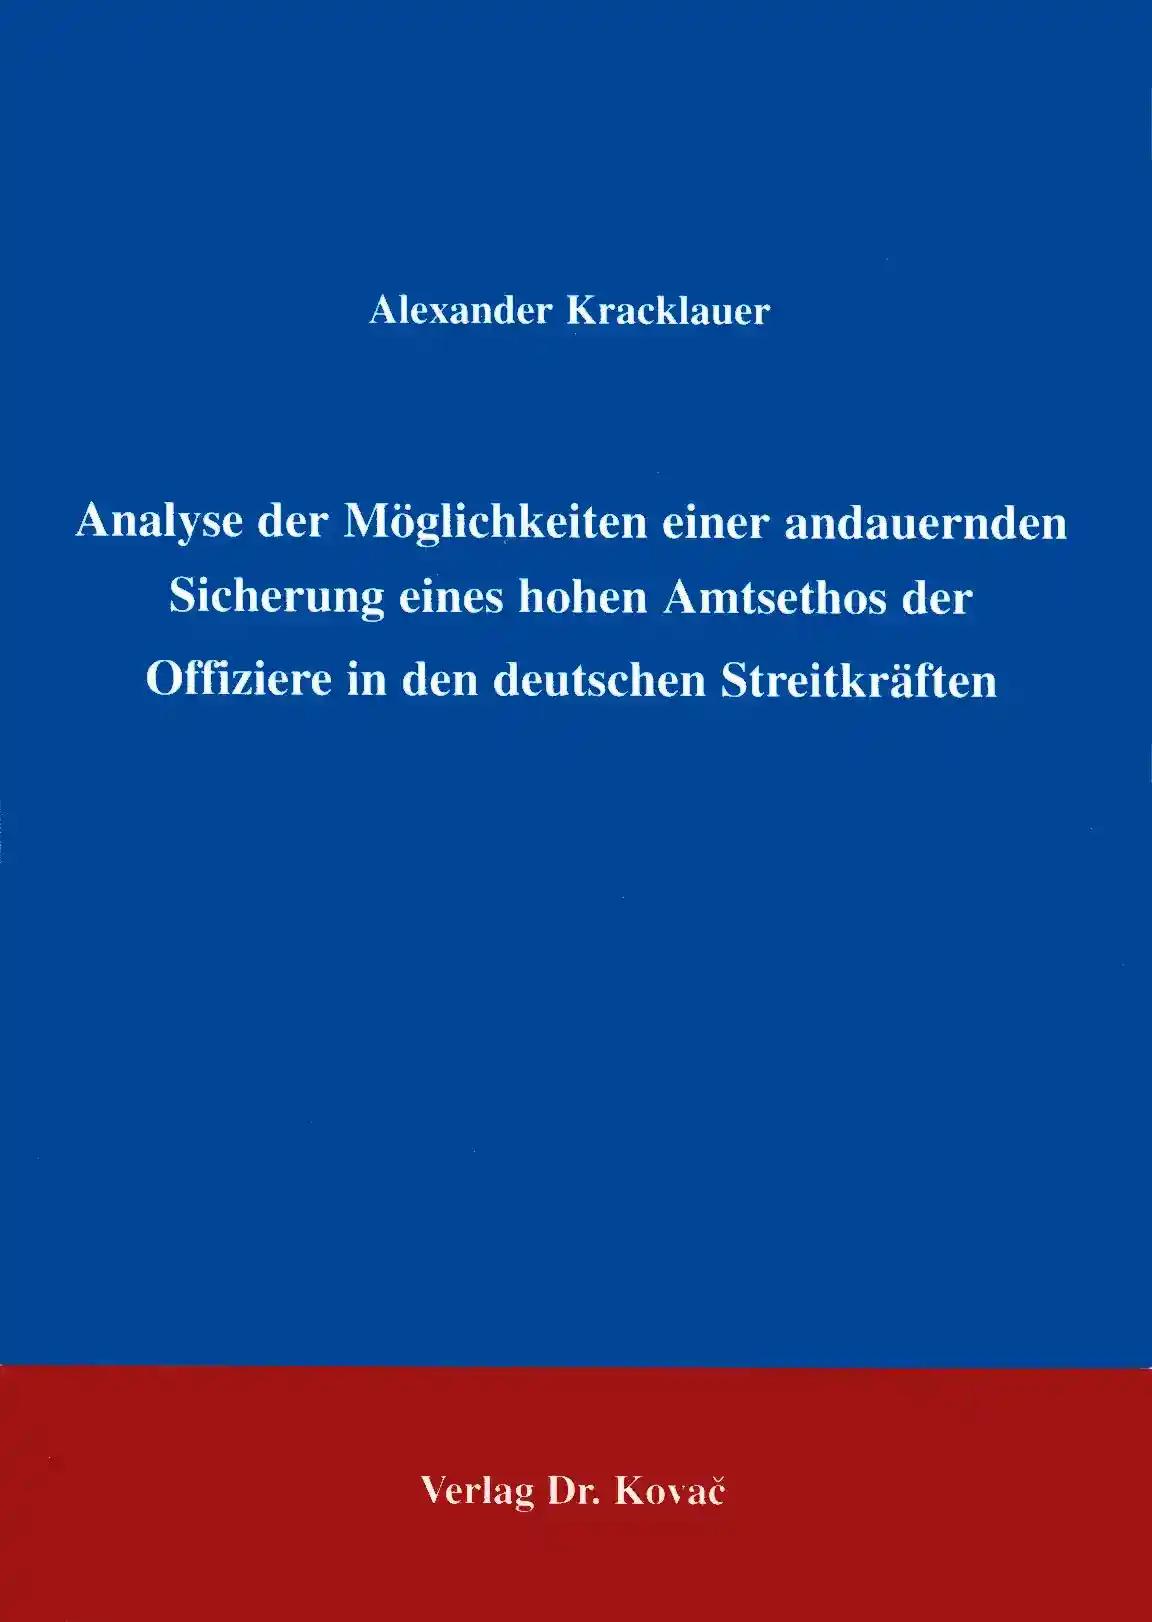 Analyse der Möglichkeiten einer andauernden Sicherung eines hohen Amtsethos der Offiziere in den deutschen Streitkräften, - Alexander Kracklauer